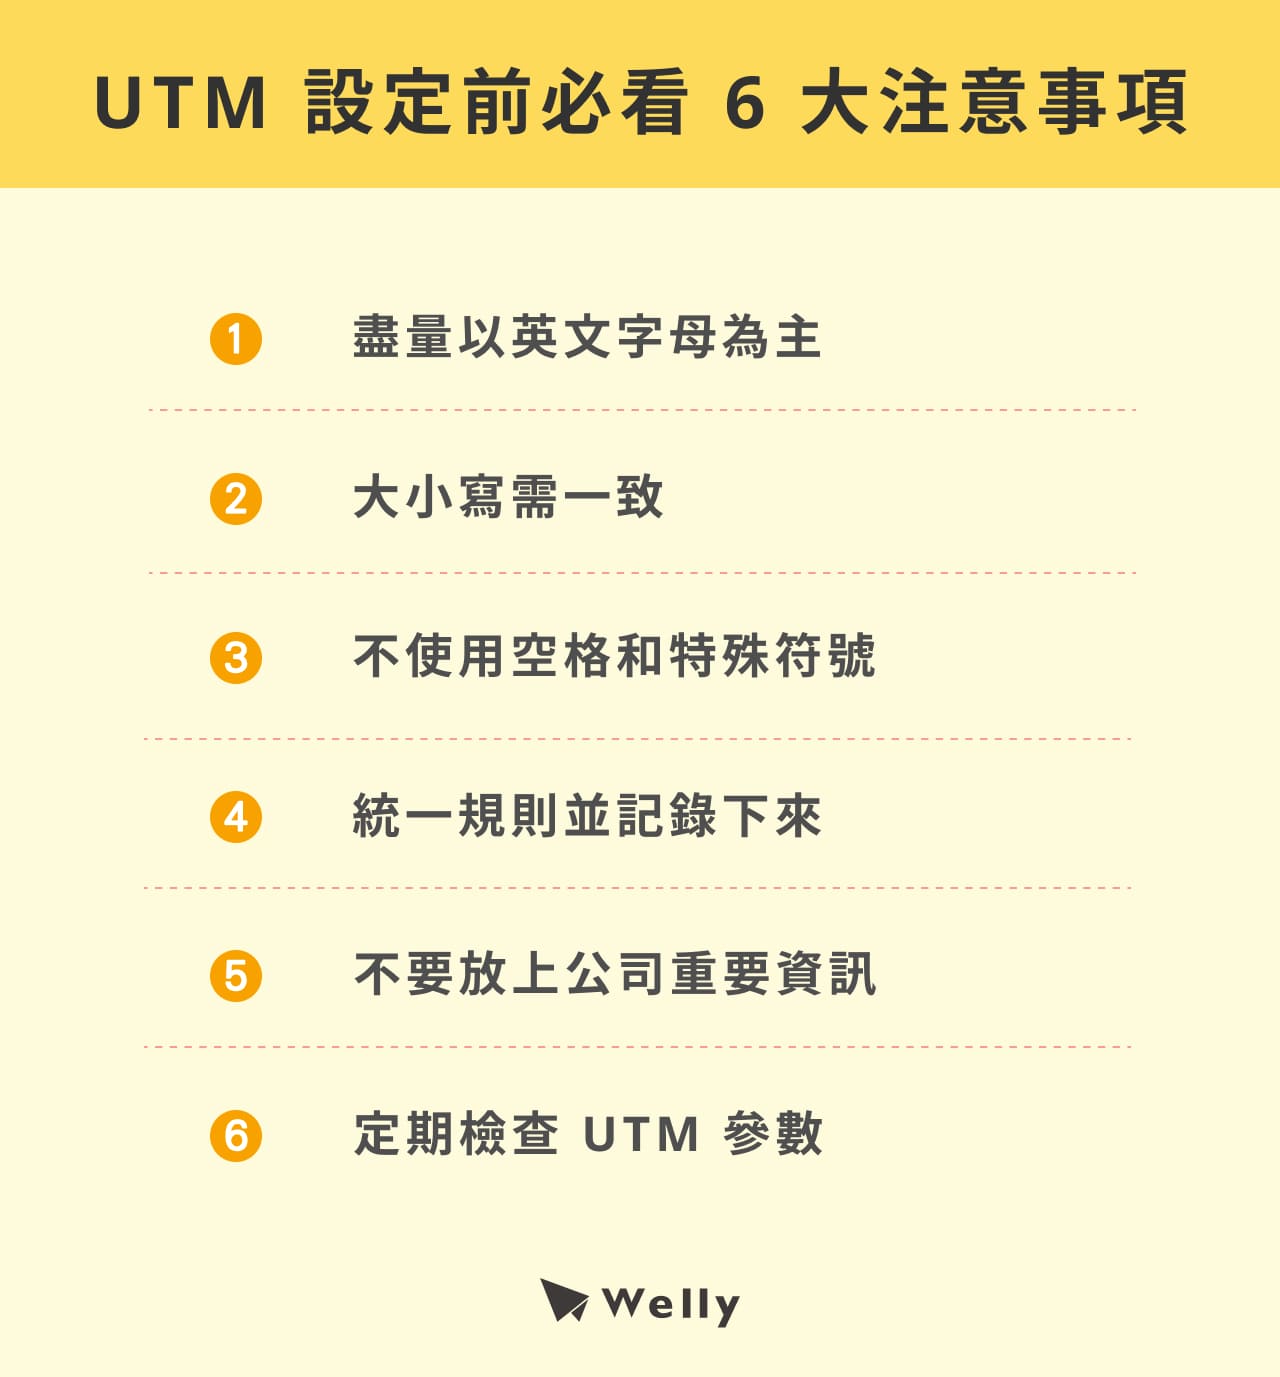 UTM 設定前必看 6 大注意事項：盡量以英文字母為主、大小寫需一致、不使用空格和特殊符號、統一規則並記錄下來、不要放上公司重要資訊、定期檢查 UTM 參數